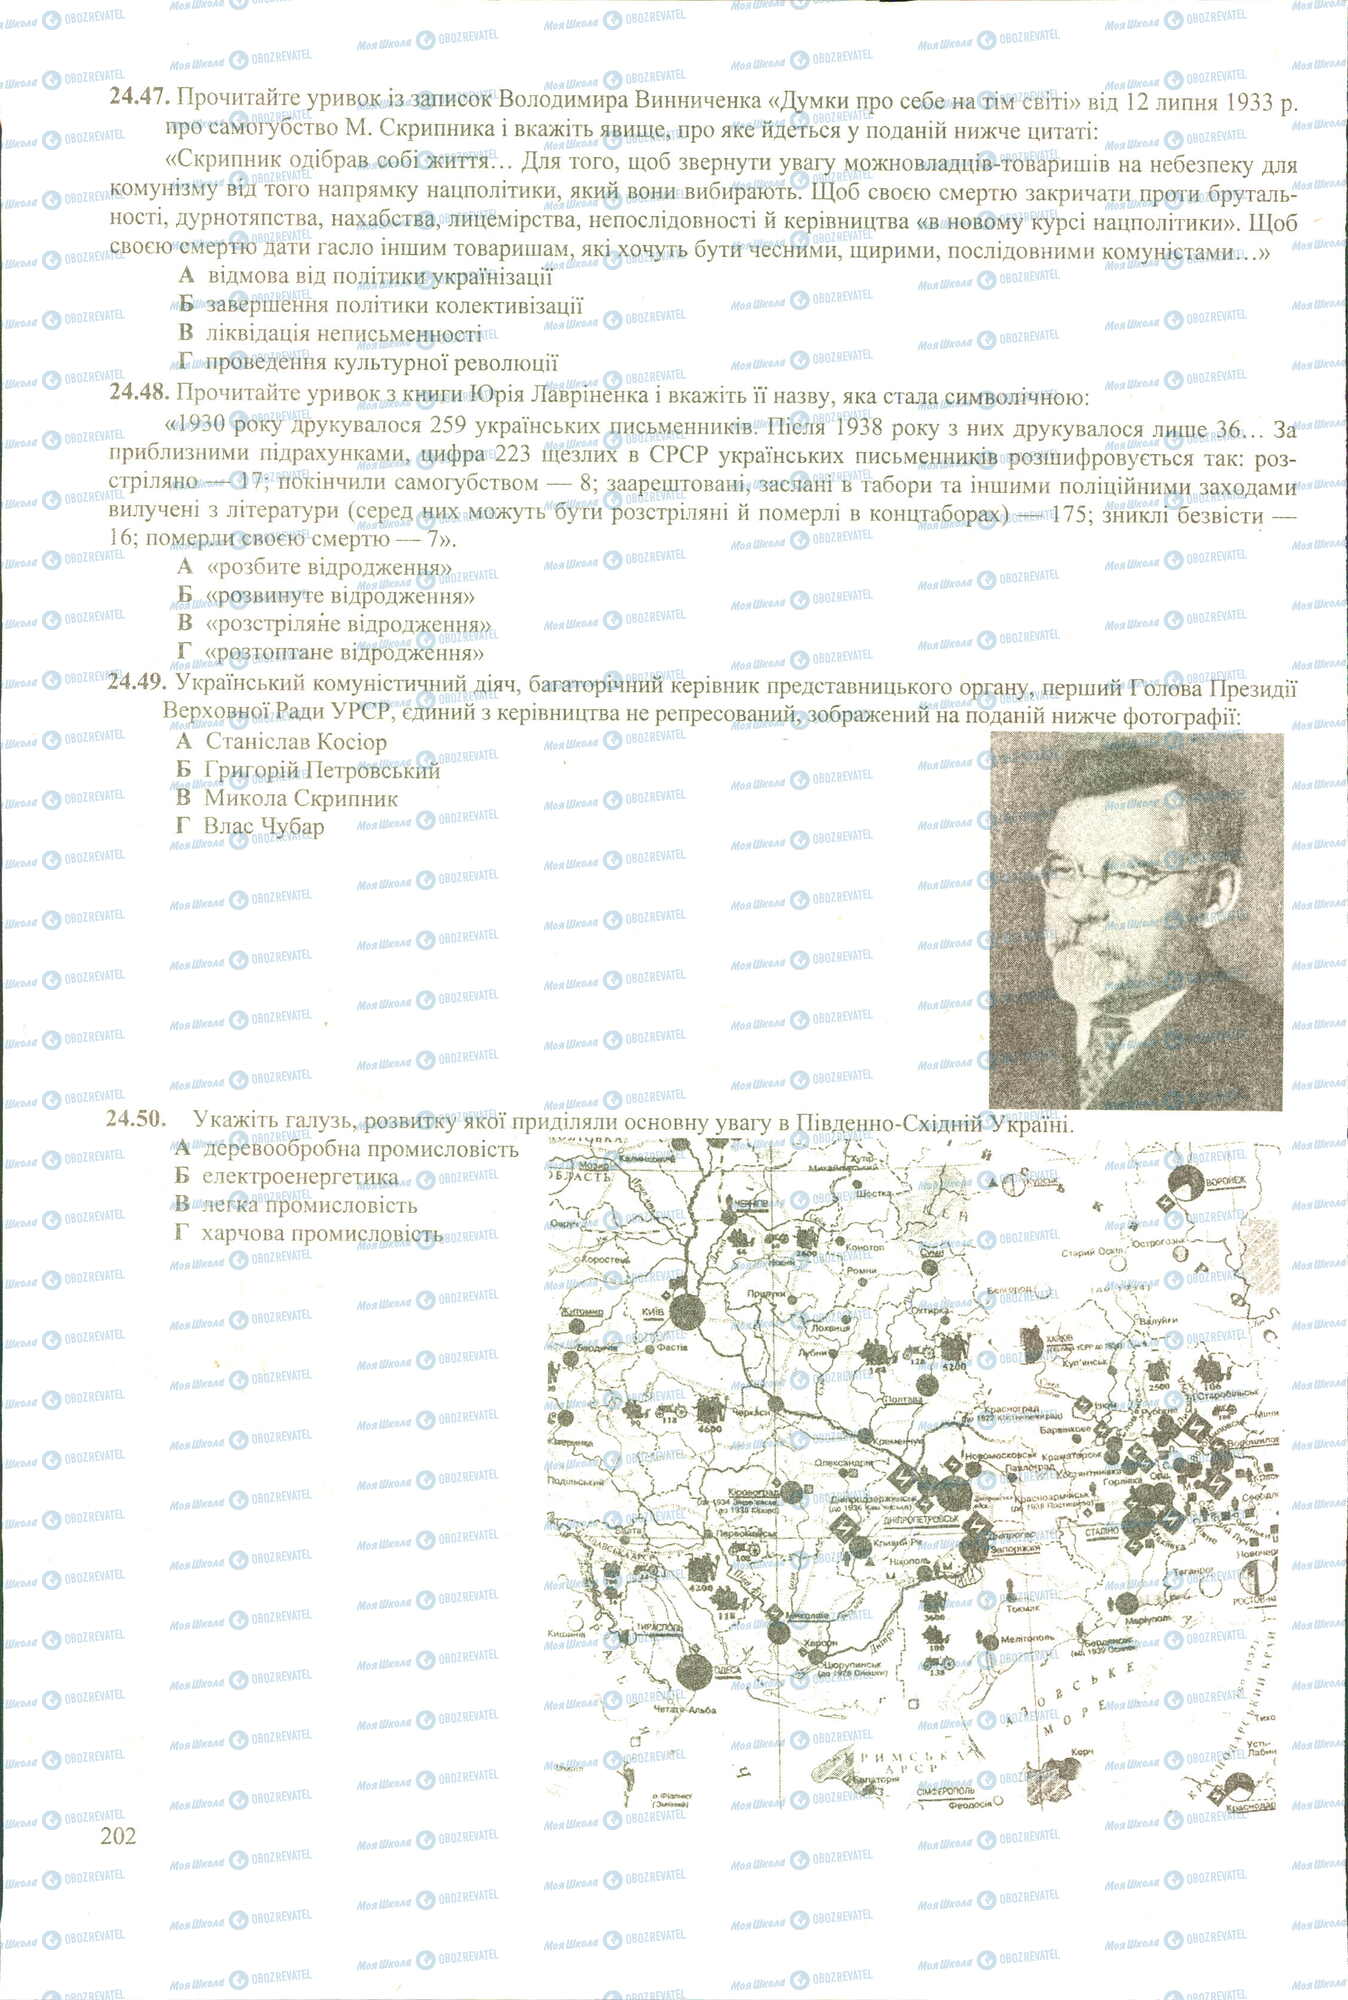 ЗНО История Украины 11 класс страница 43-50